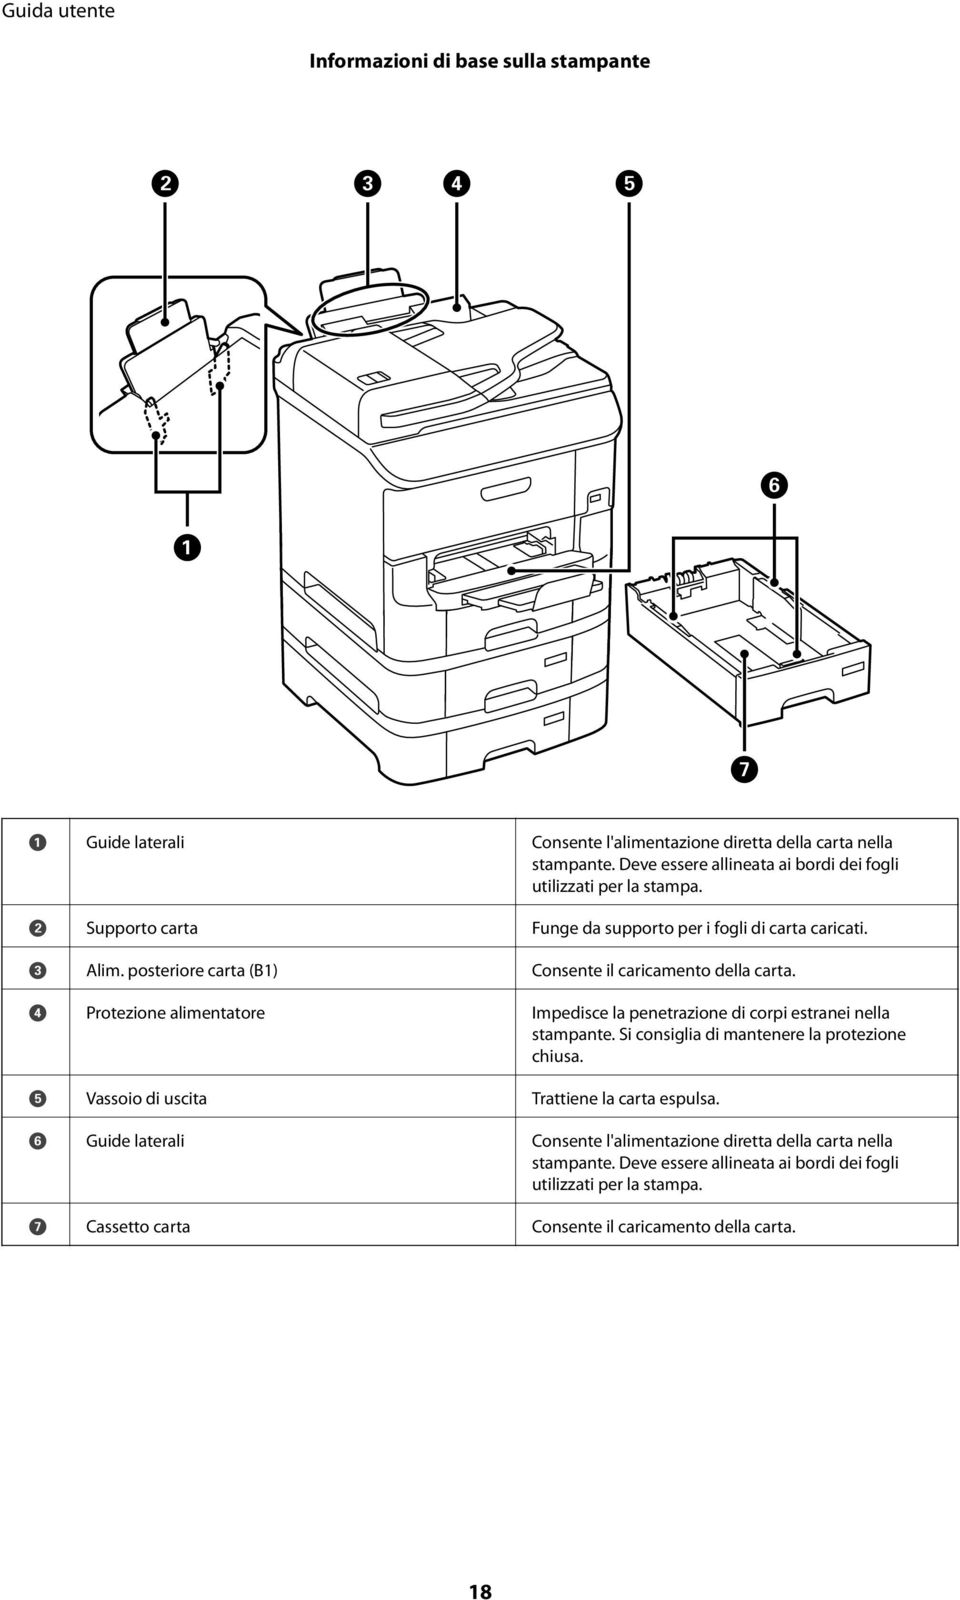 posteriore carta (B1) Consente il caricamento della carta. D Protezione alimentatore Impedisce la penetrazione di corpi estranei nella stampante.